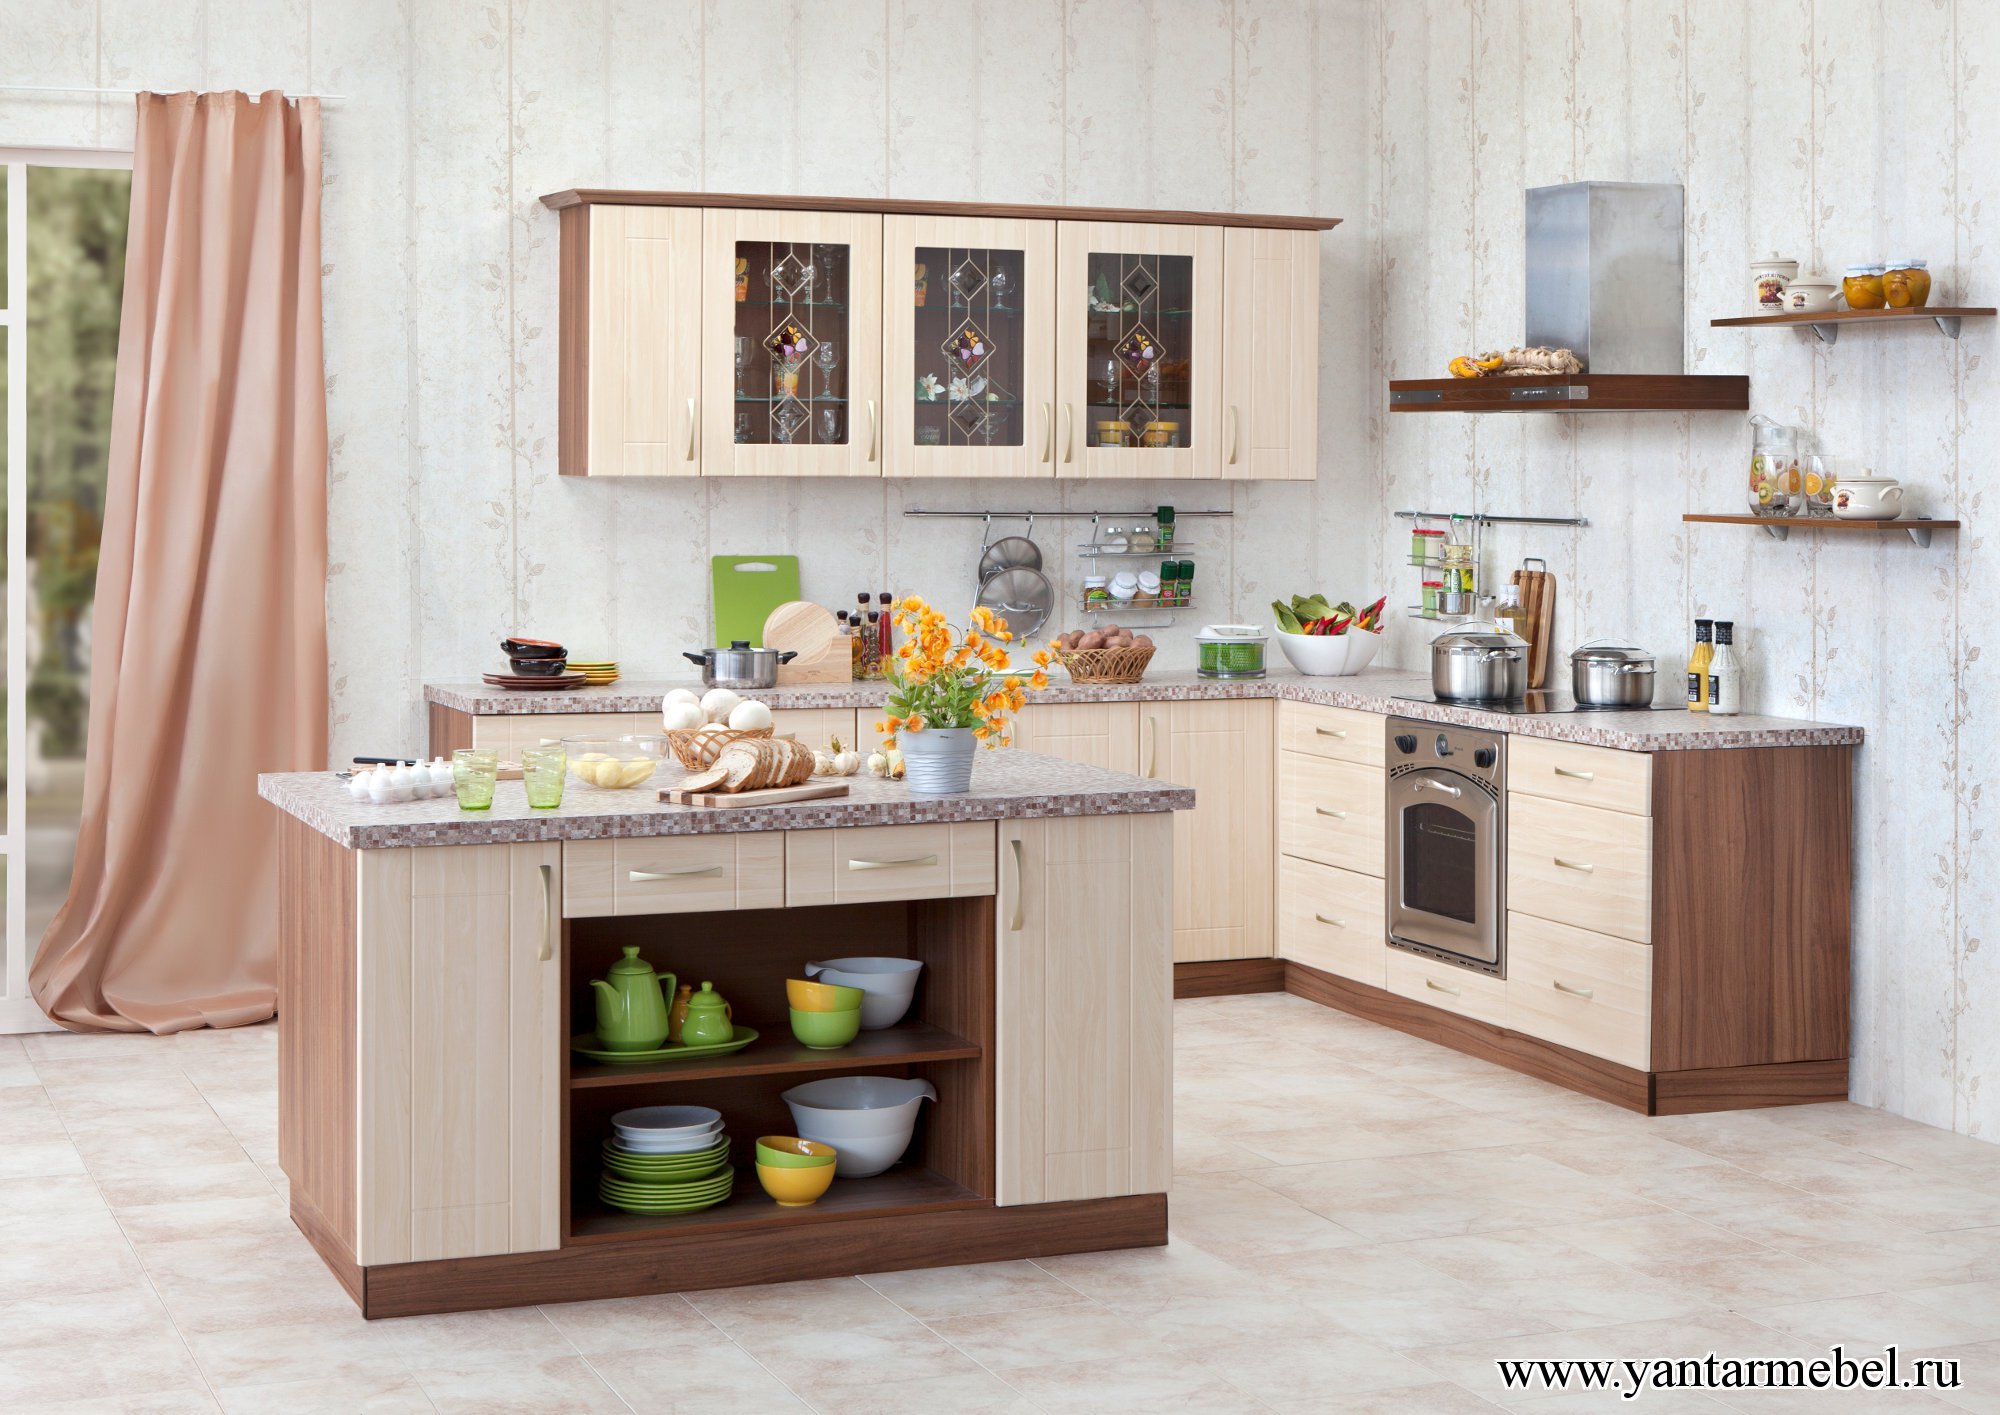 Кухня 116. Кухни фабрики янтарь. Кухня цвет дуб. Кухня орехового цвета. Кухни цвета орех.